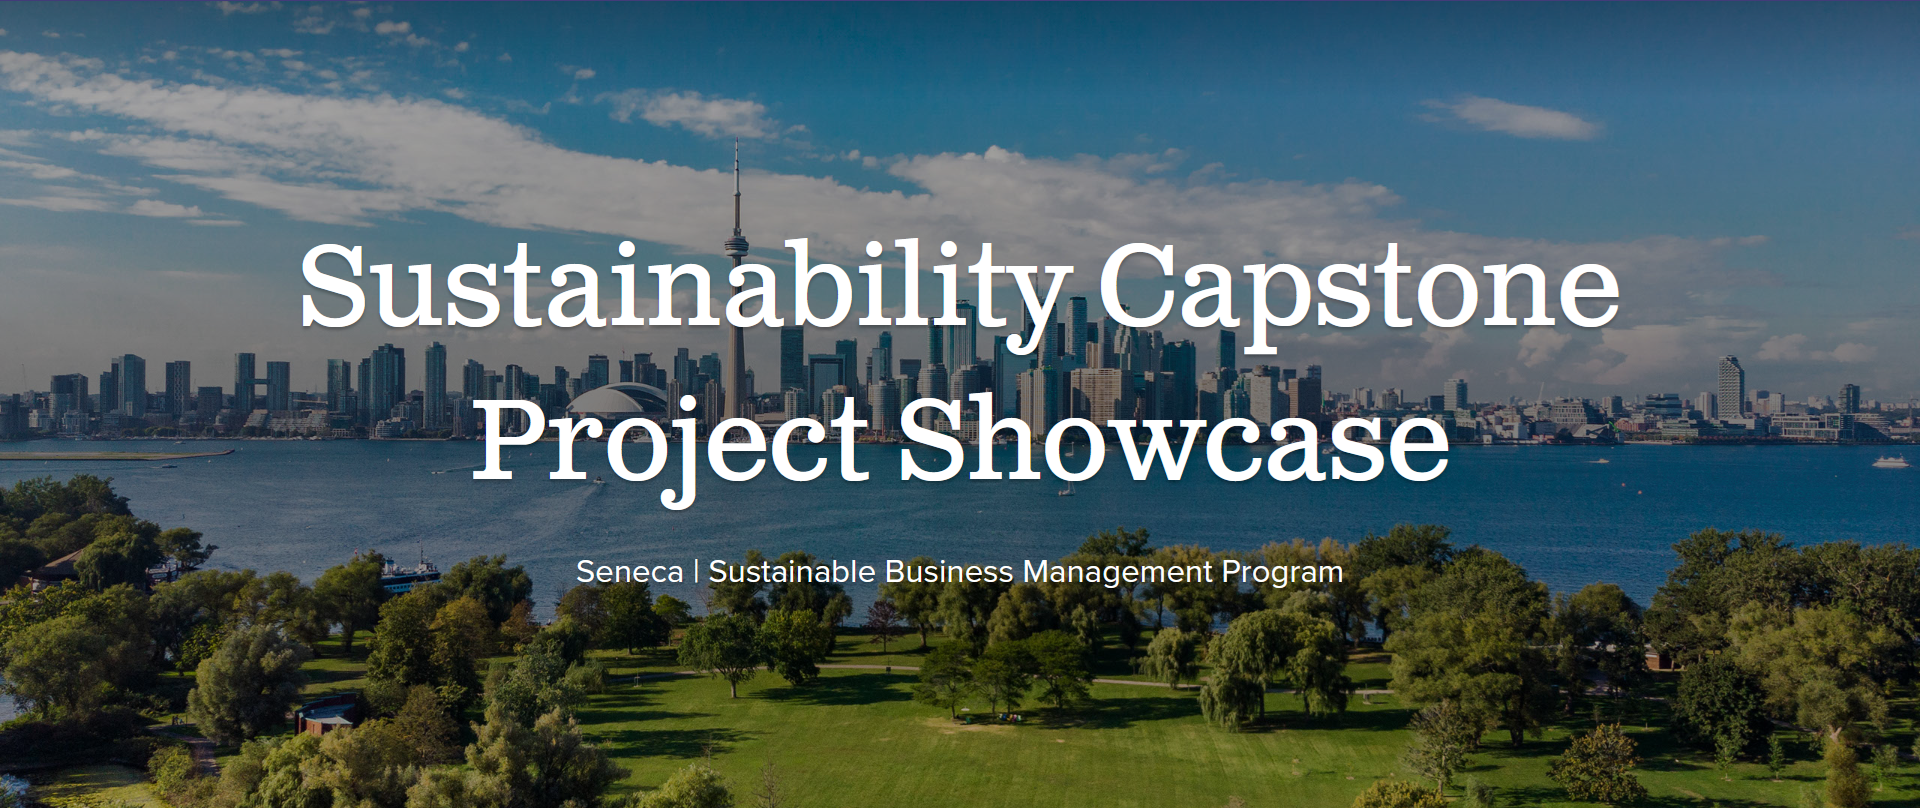 Sustainability Capstone Project Showcase Seneca | Sustainable Business Management Program